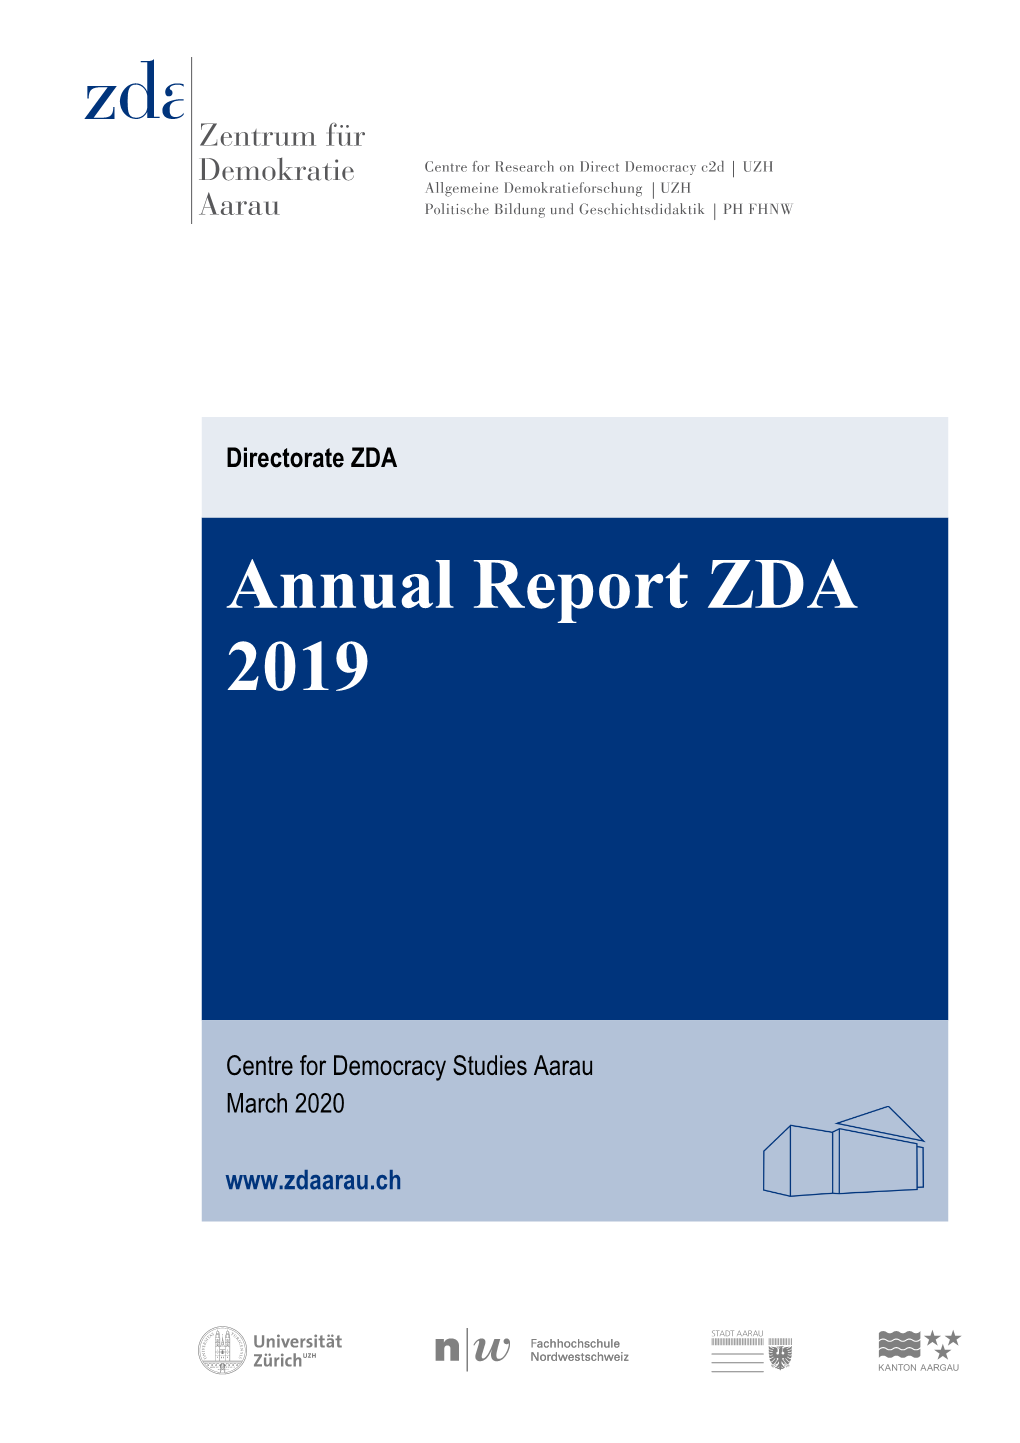 Annual Report ZDA 2019